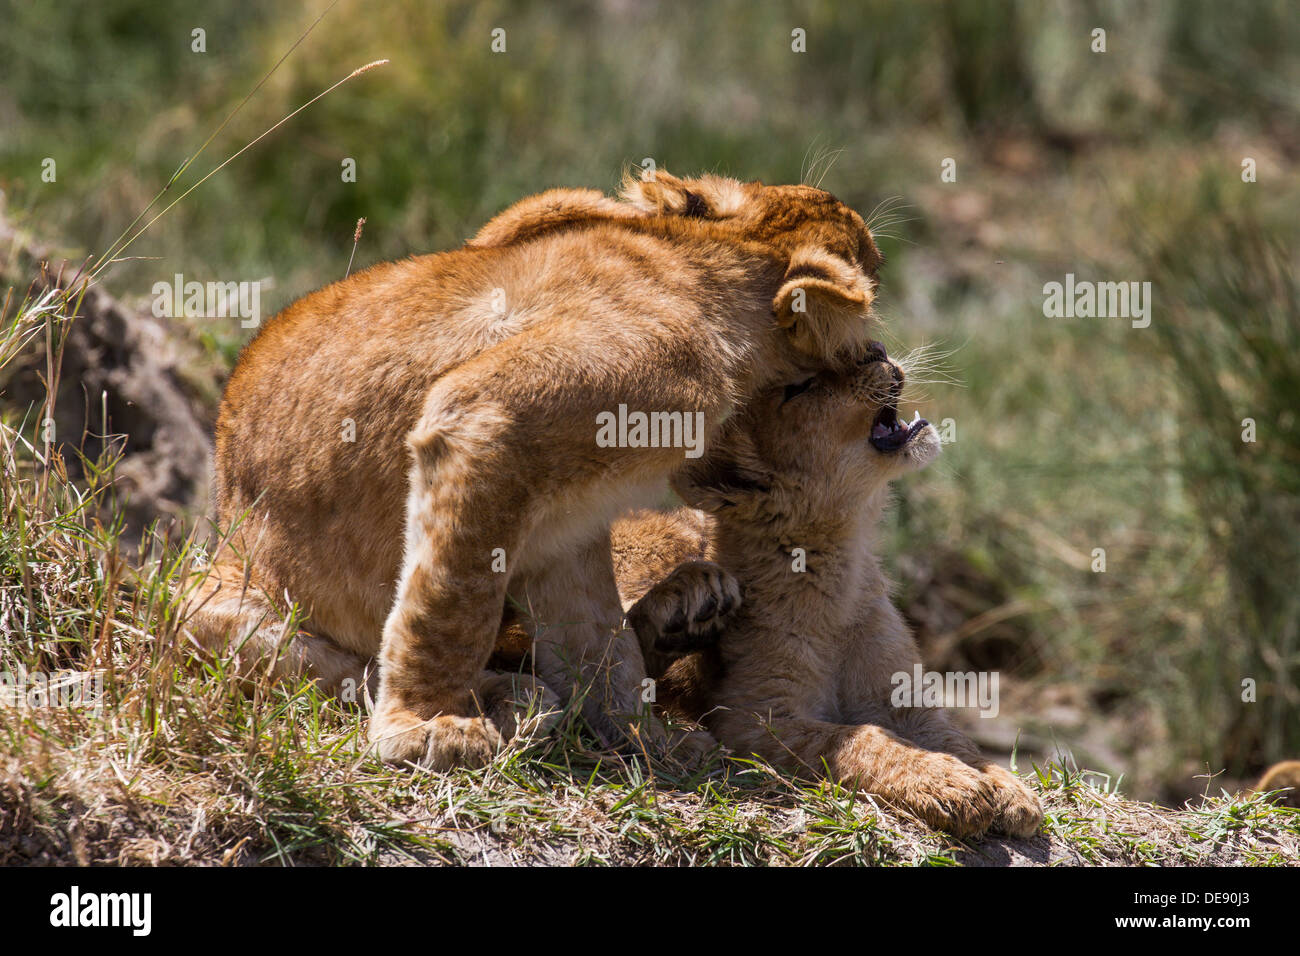 Cute des lionceaux, montrer de l'affection (Serengeti) Banque D'Images